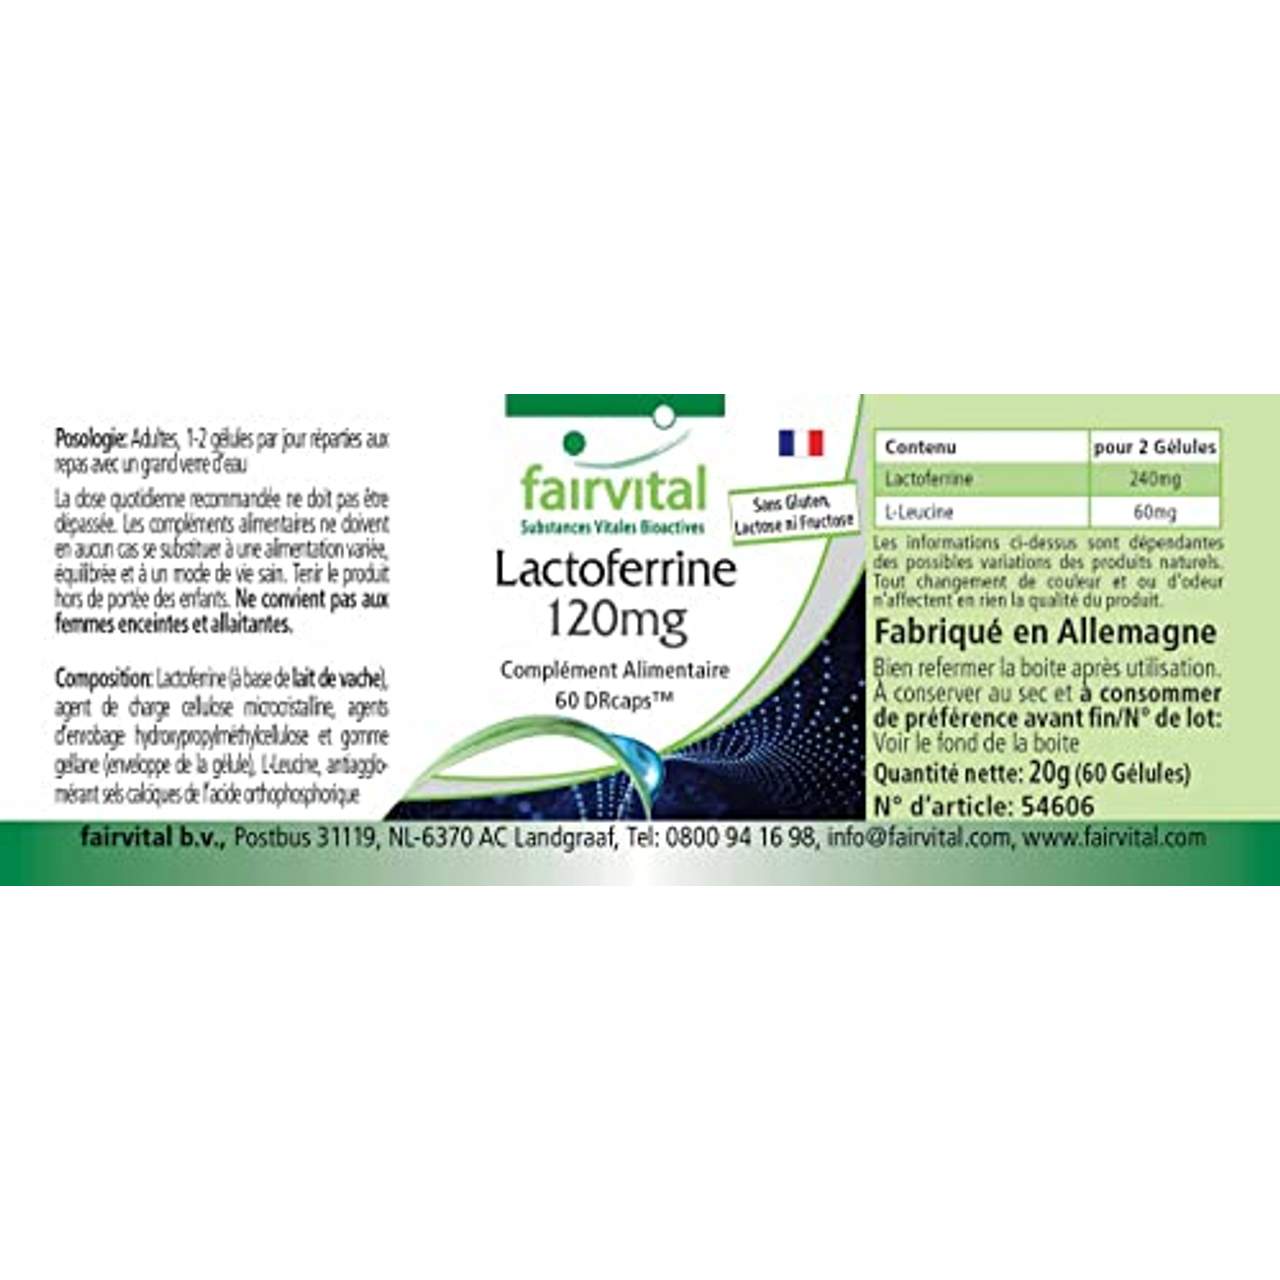 fairvital Lactoferrin 120 mg